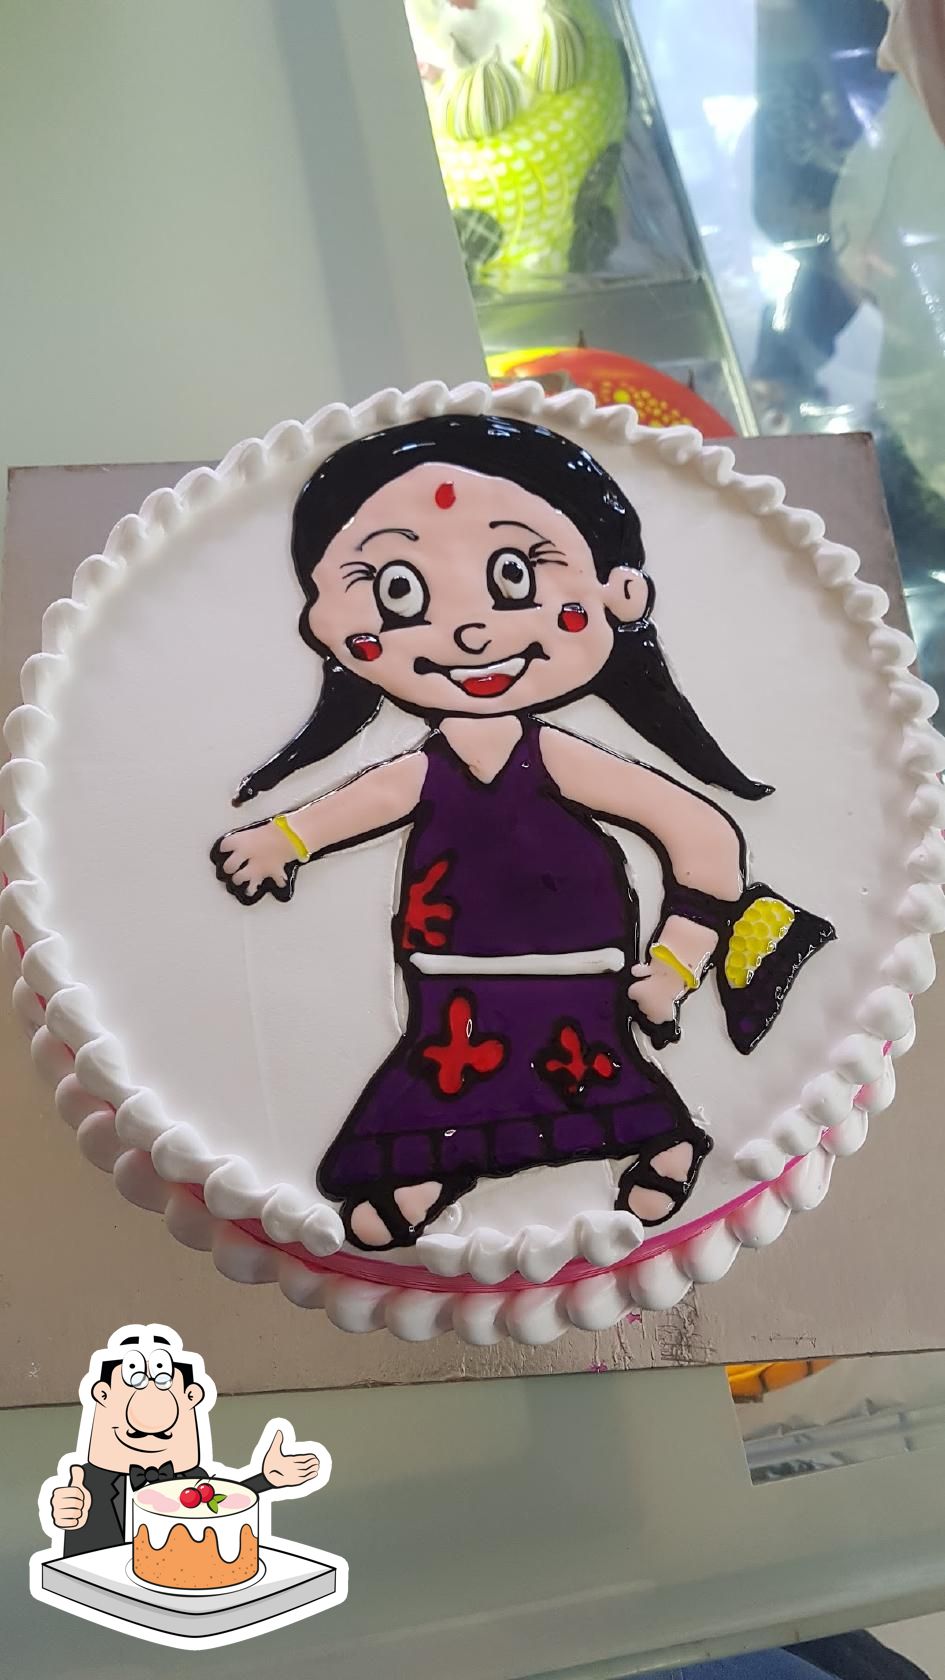 6 वां जन्मदिन वीडियो गेम केक टॉपर स्तर 6 बच्चों के लड़के लड़की 6 साल पुरानी  जन्मदिन की पार्टी सजावट के लिए खुला केक टॉपर : Amazon.in: ग्रॉसरी और ...